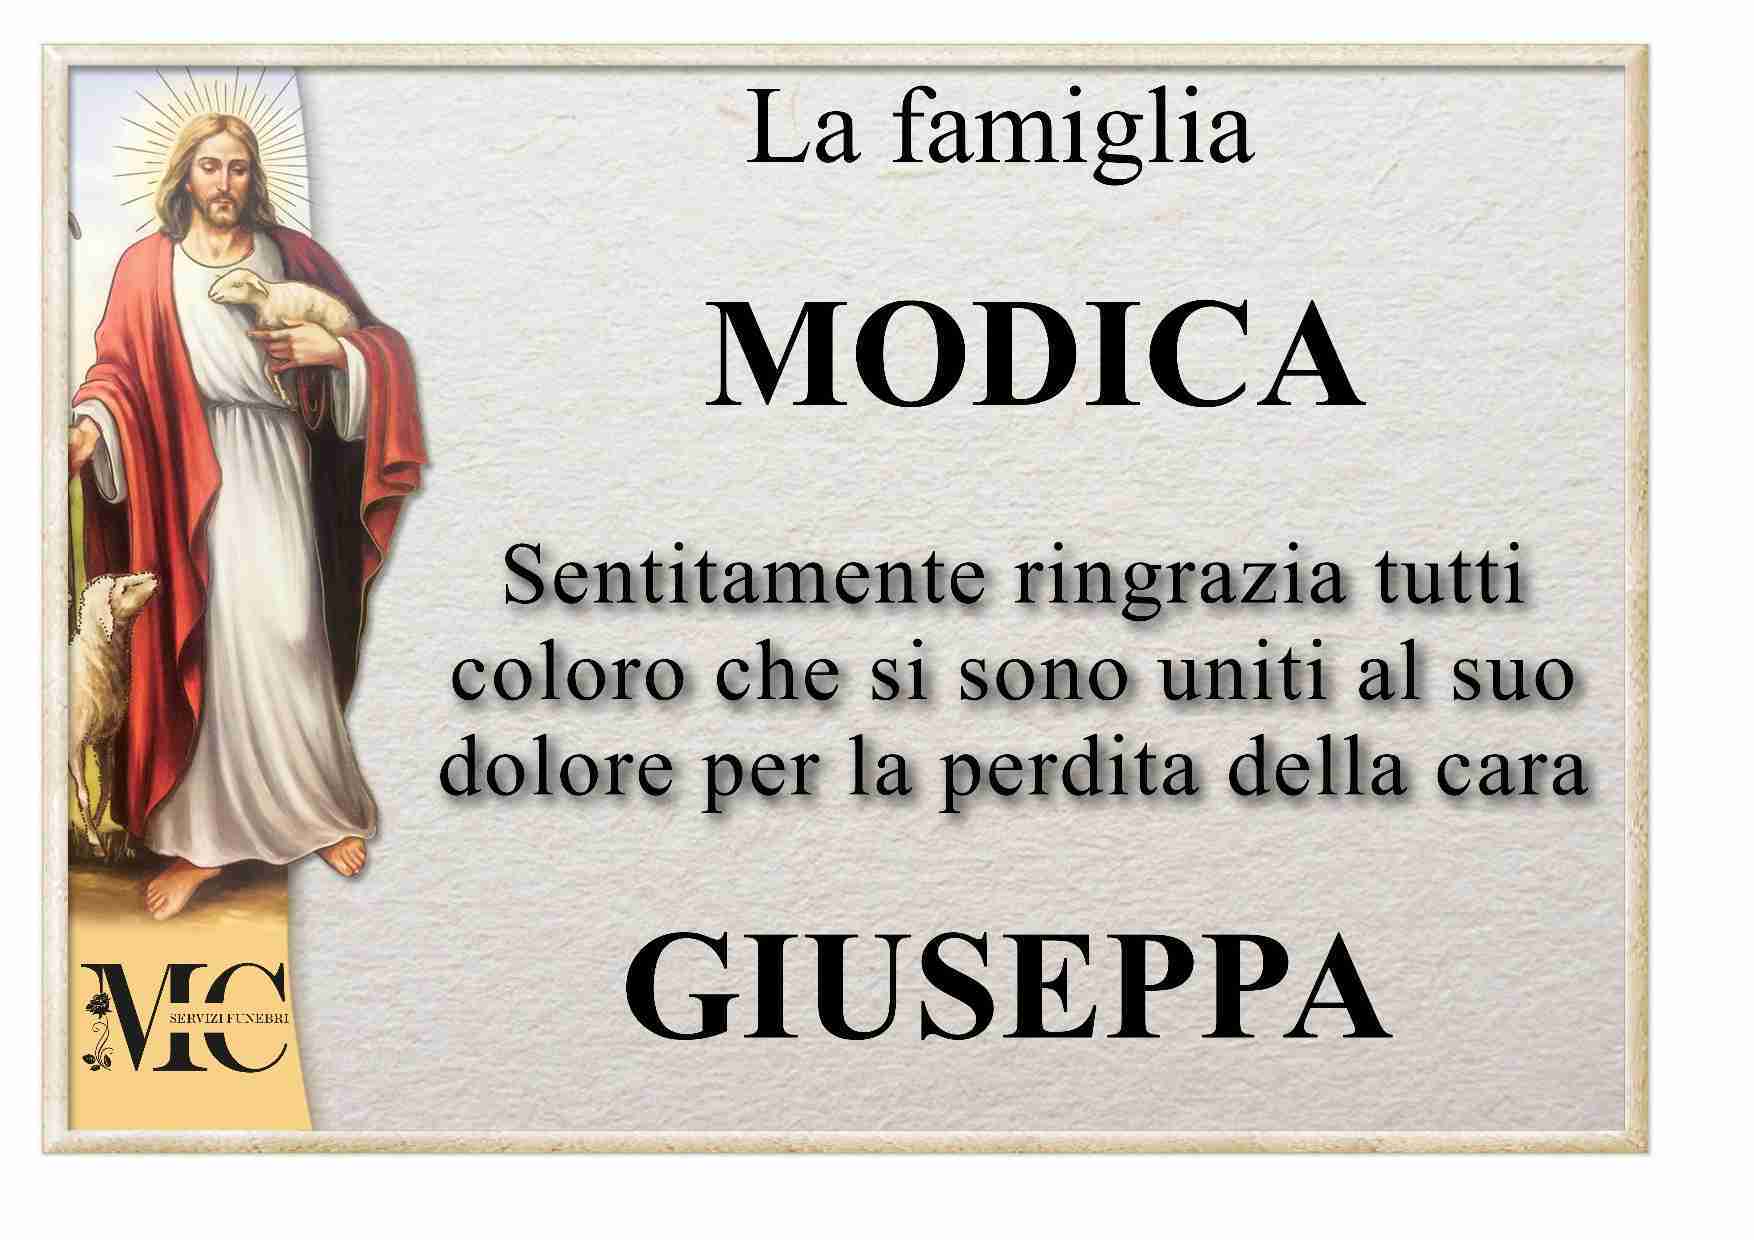 Giuseppa  Pedone